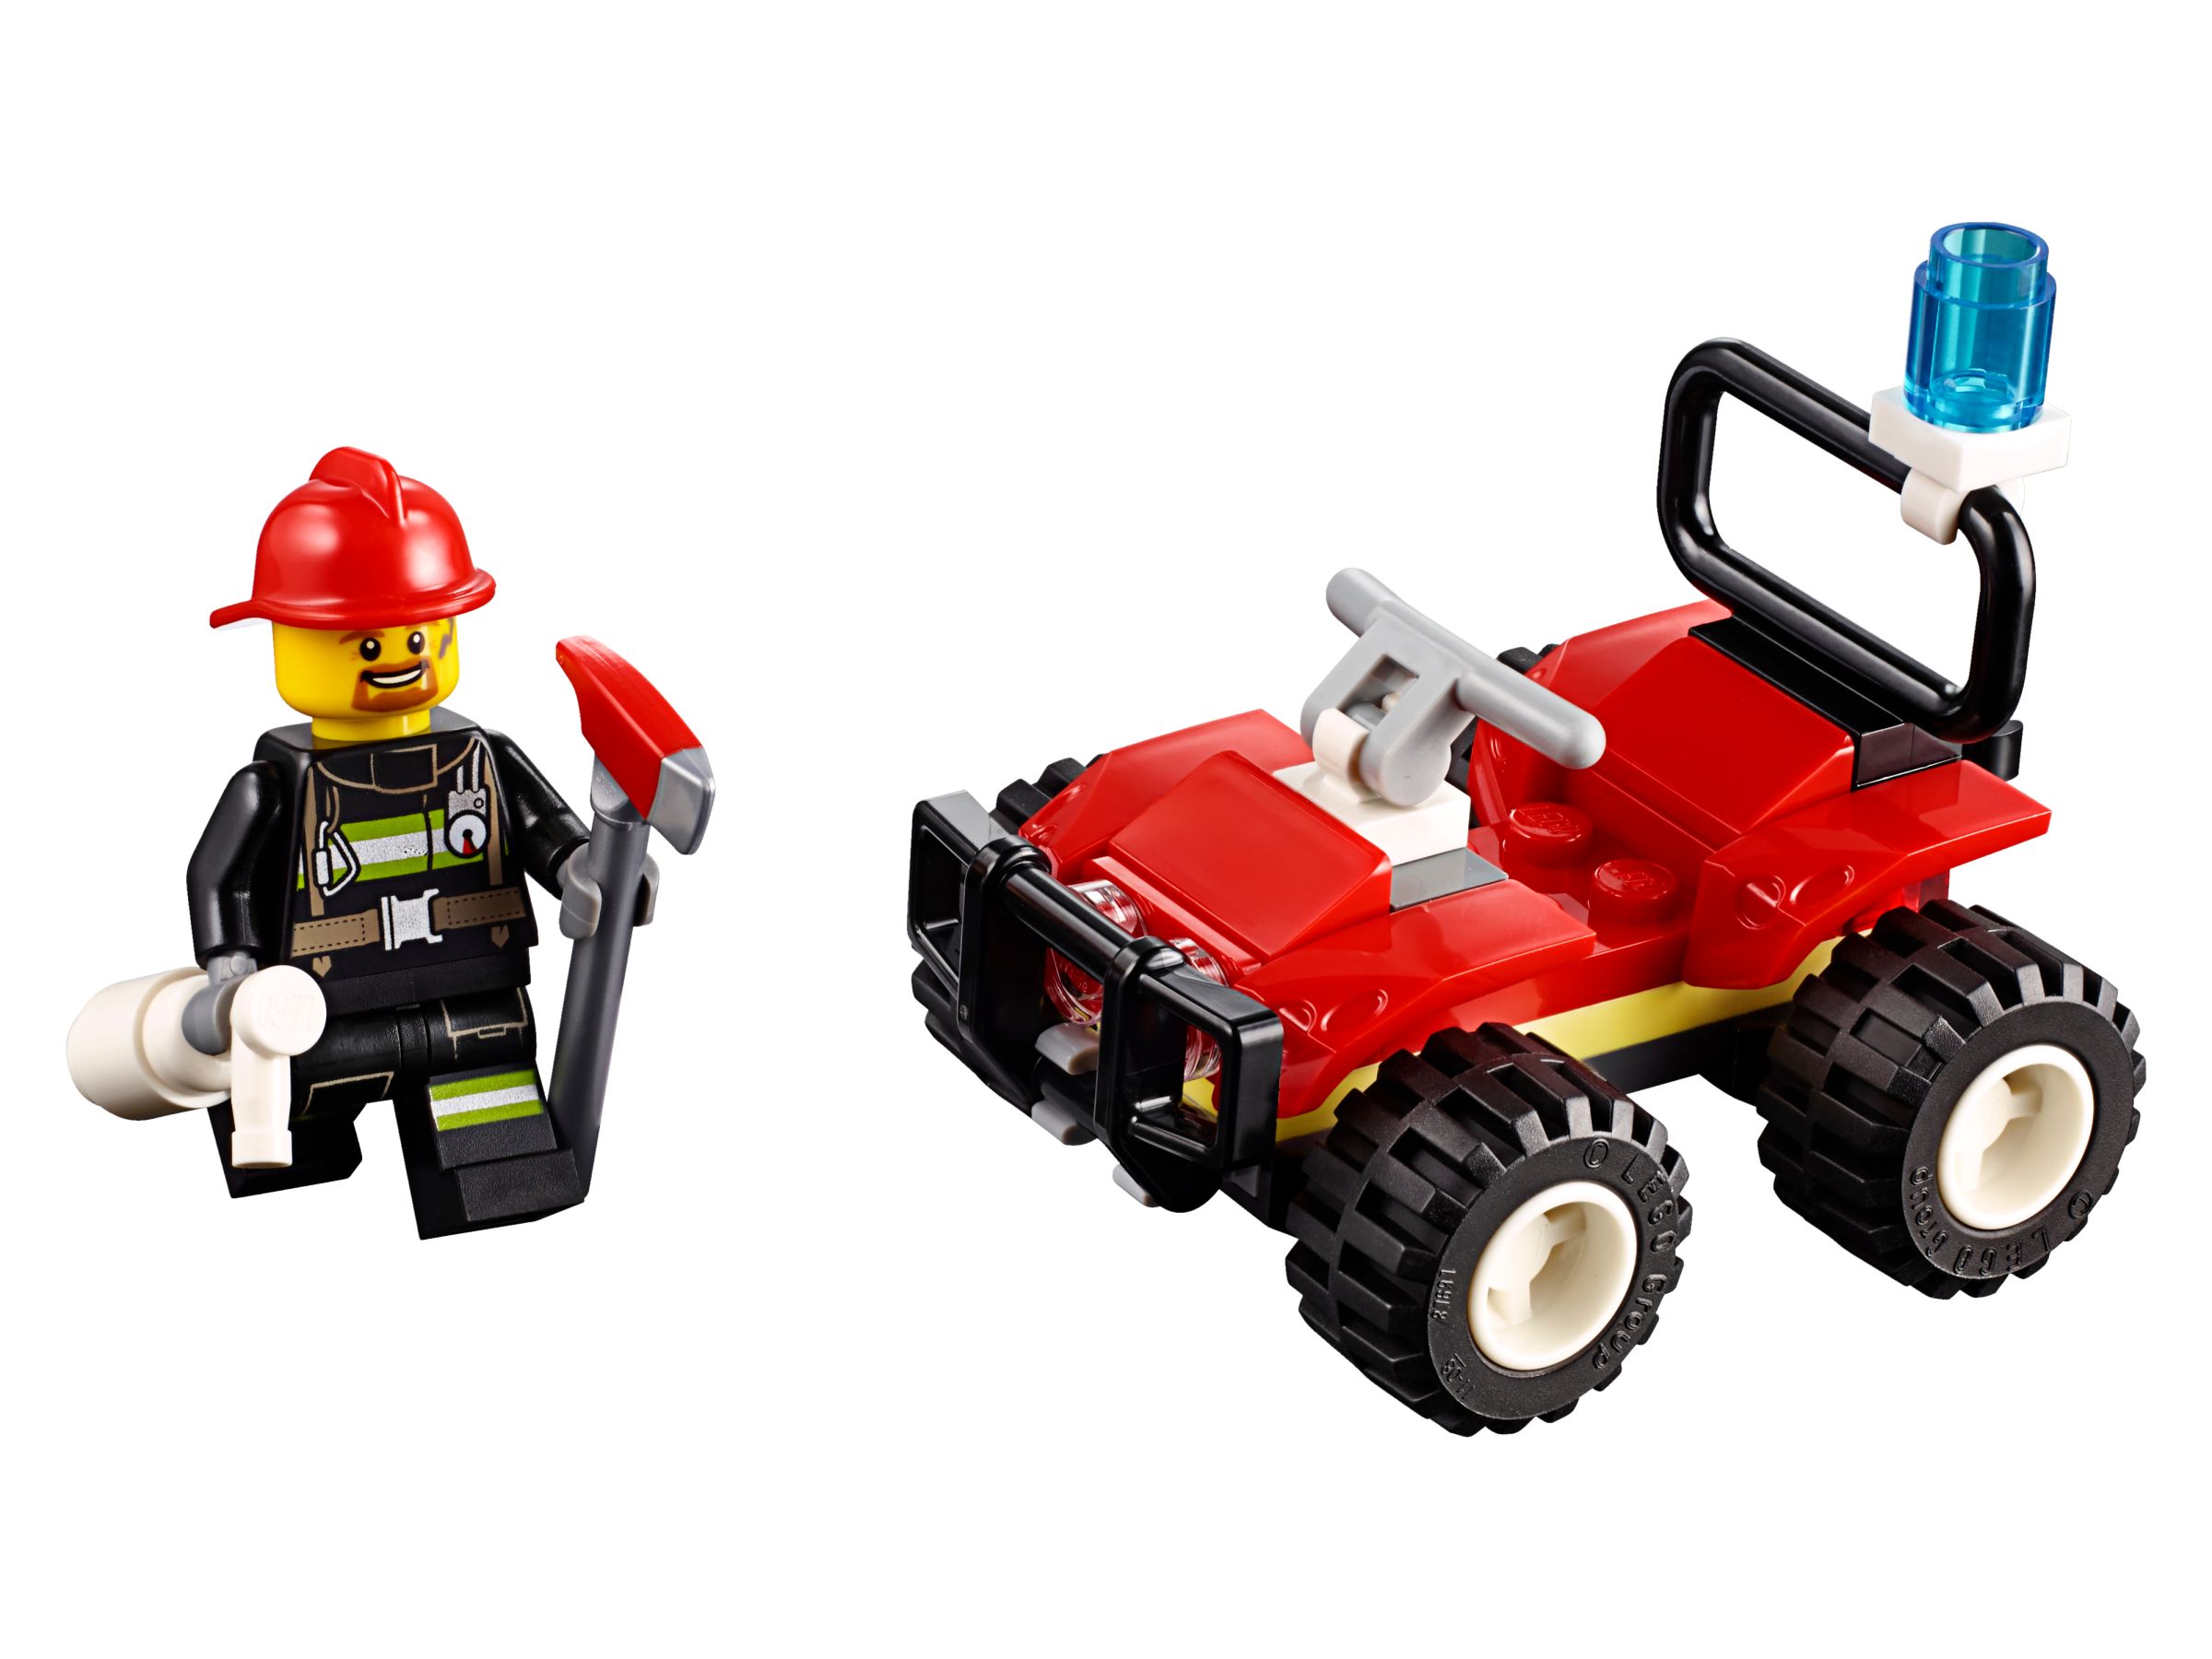 LEGO City 30361 Feuerwehr Quad Polybag